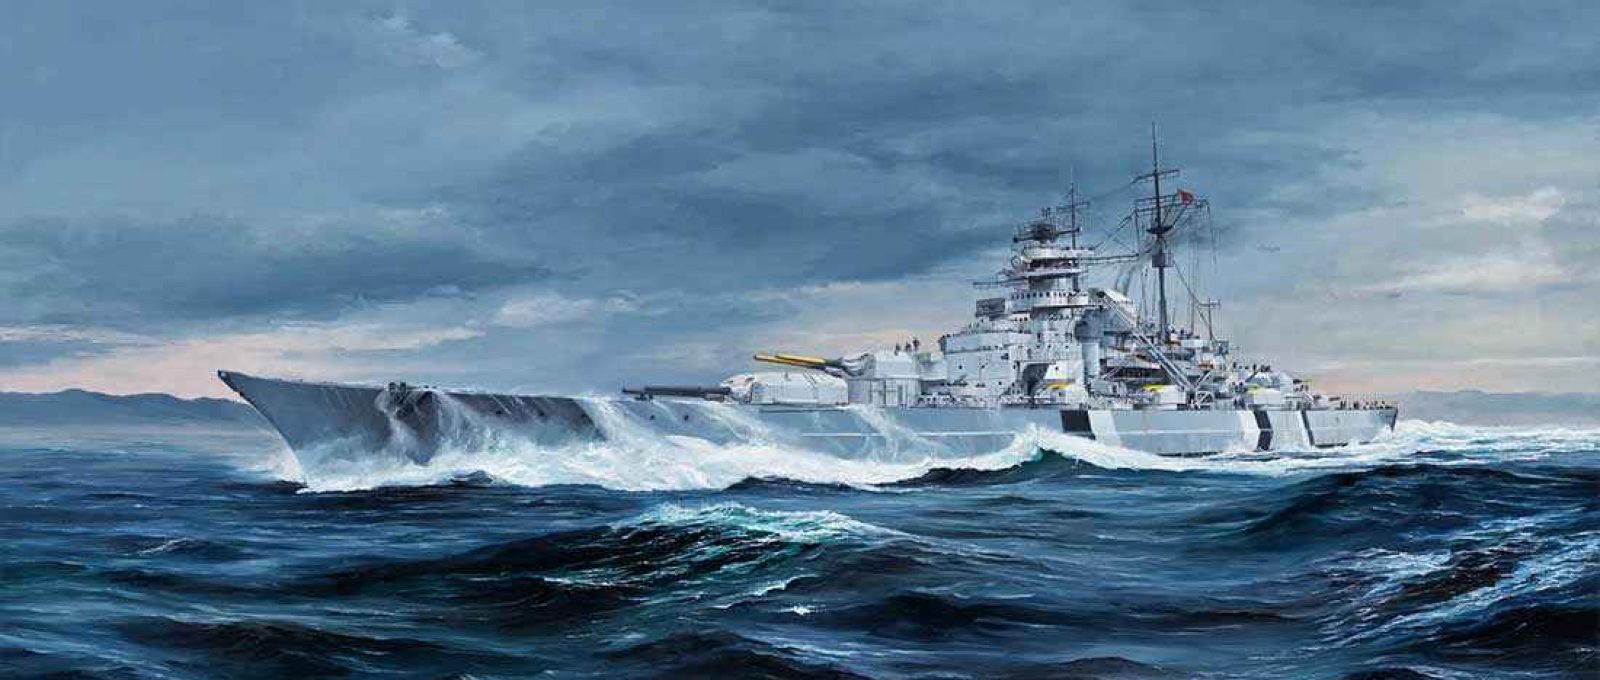 Representação artística do encouraçado alemão Bismarck (Imagem: Trumpeter).